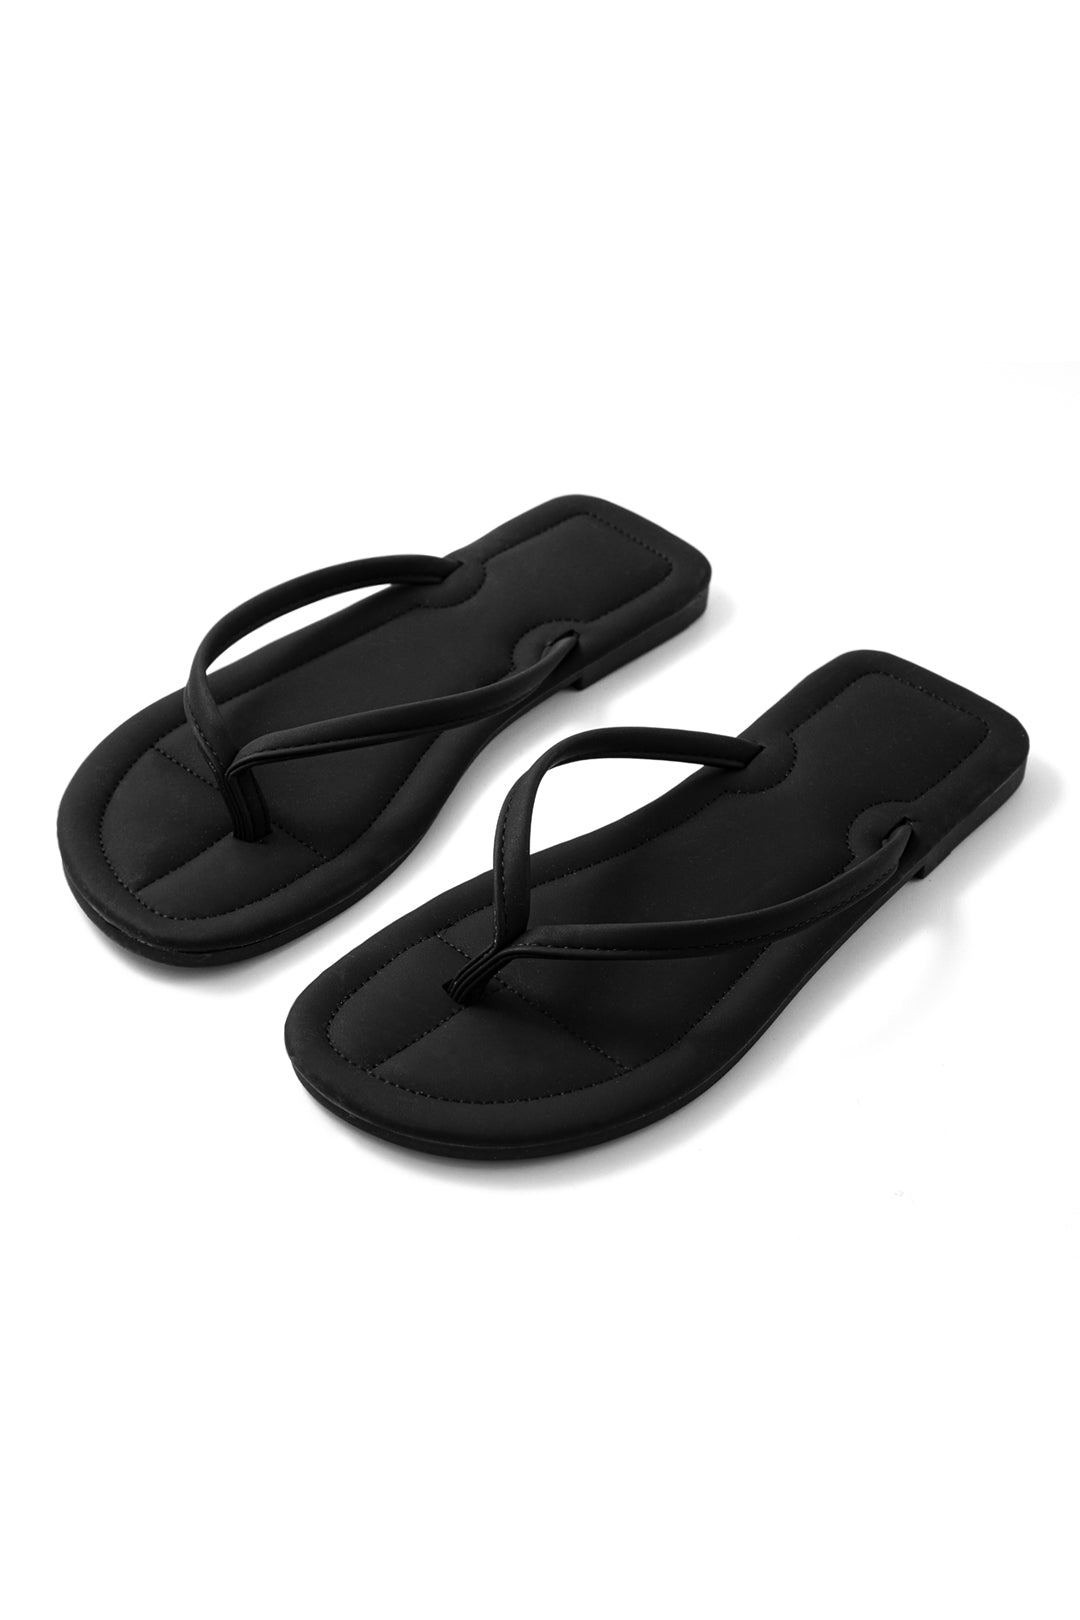 Basic Padded Flip-Flop Slippers